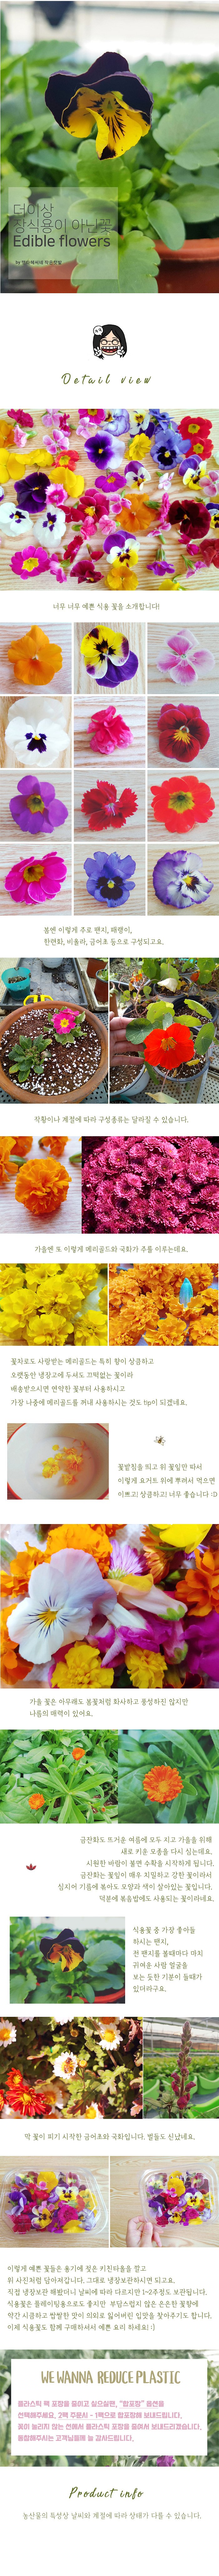 edible_flower